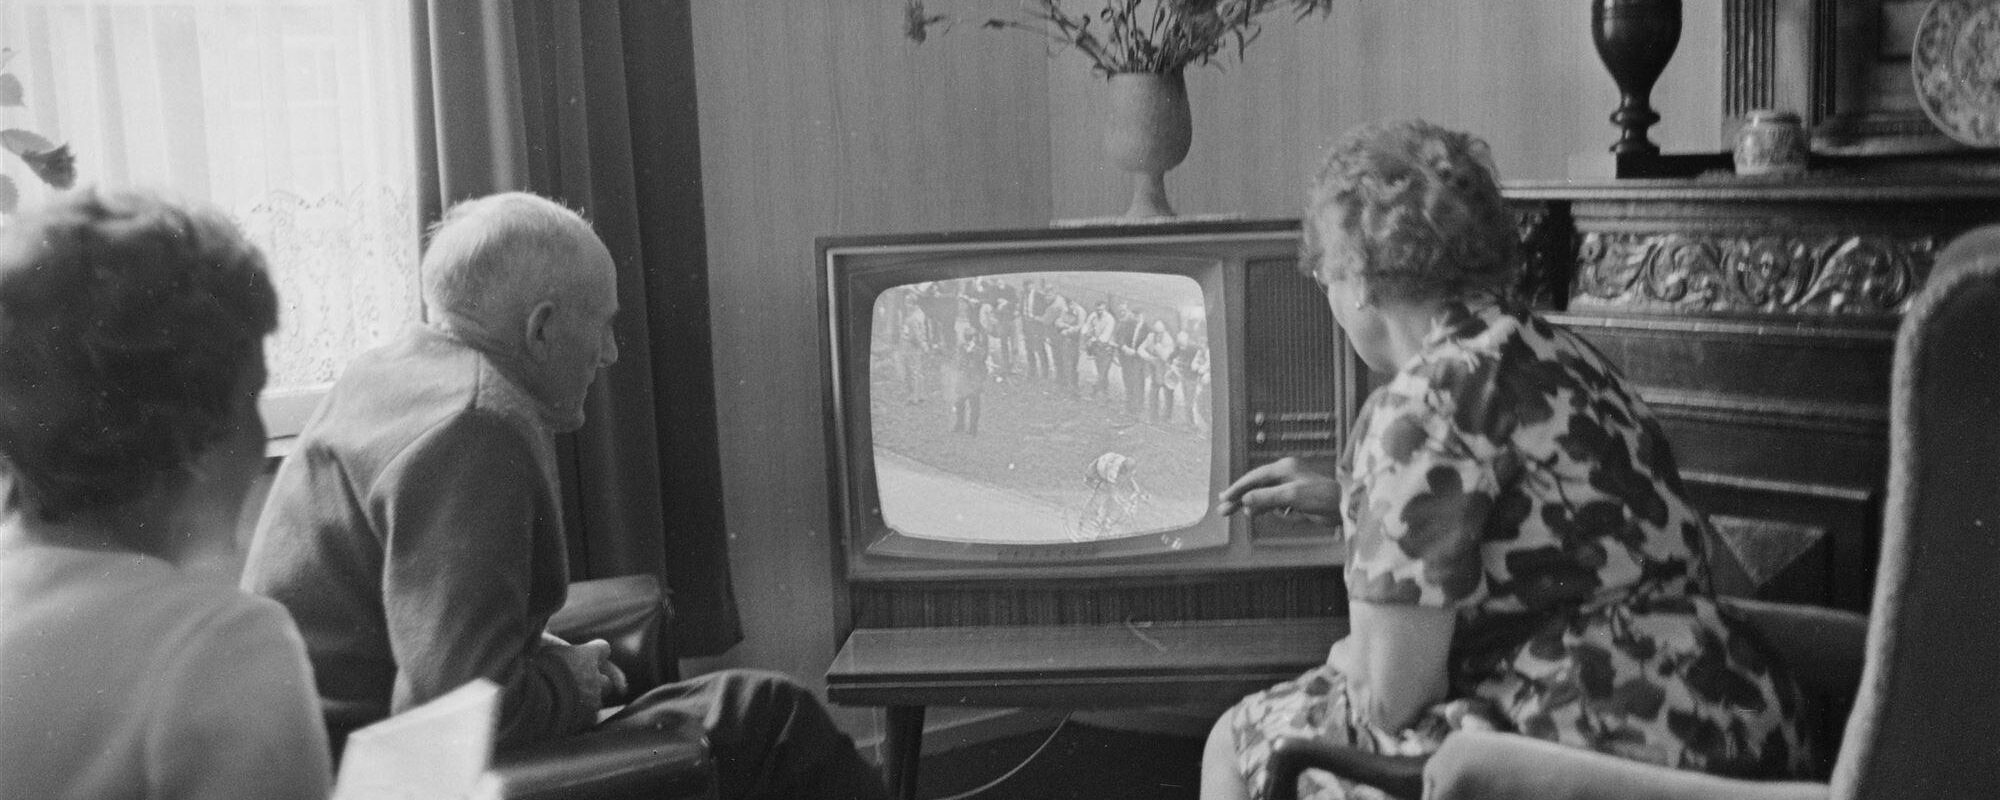 Een gezin kijkt naar de televisie, waar verschillende zuilen een eigen omroep hebben, circa jaren zestig. (Beeld: ANP)